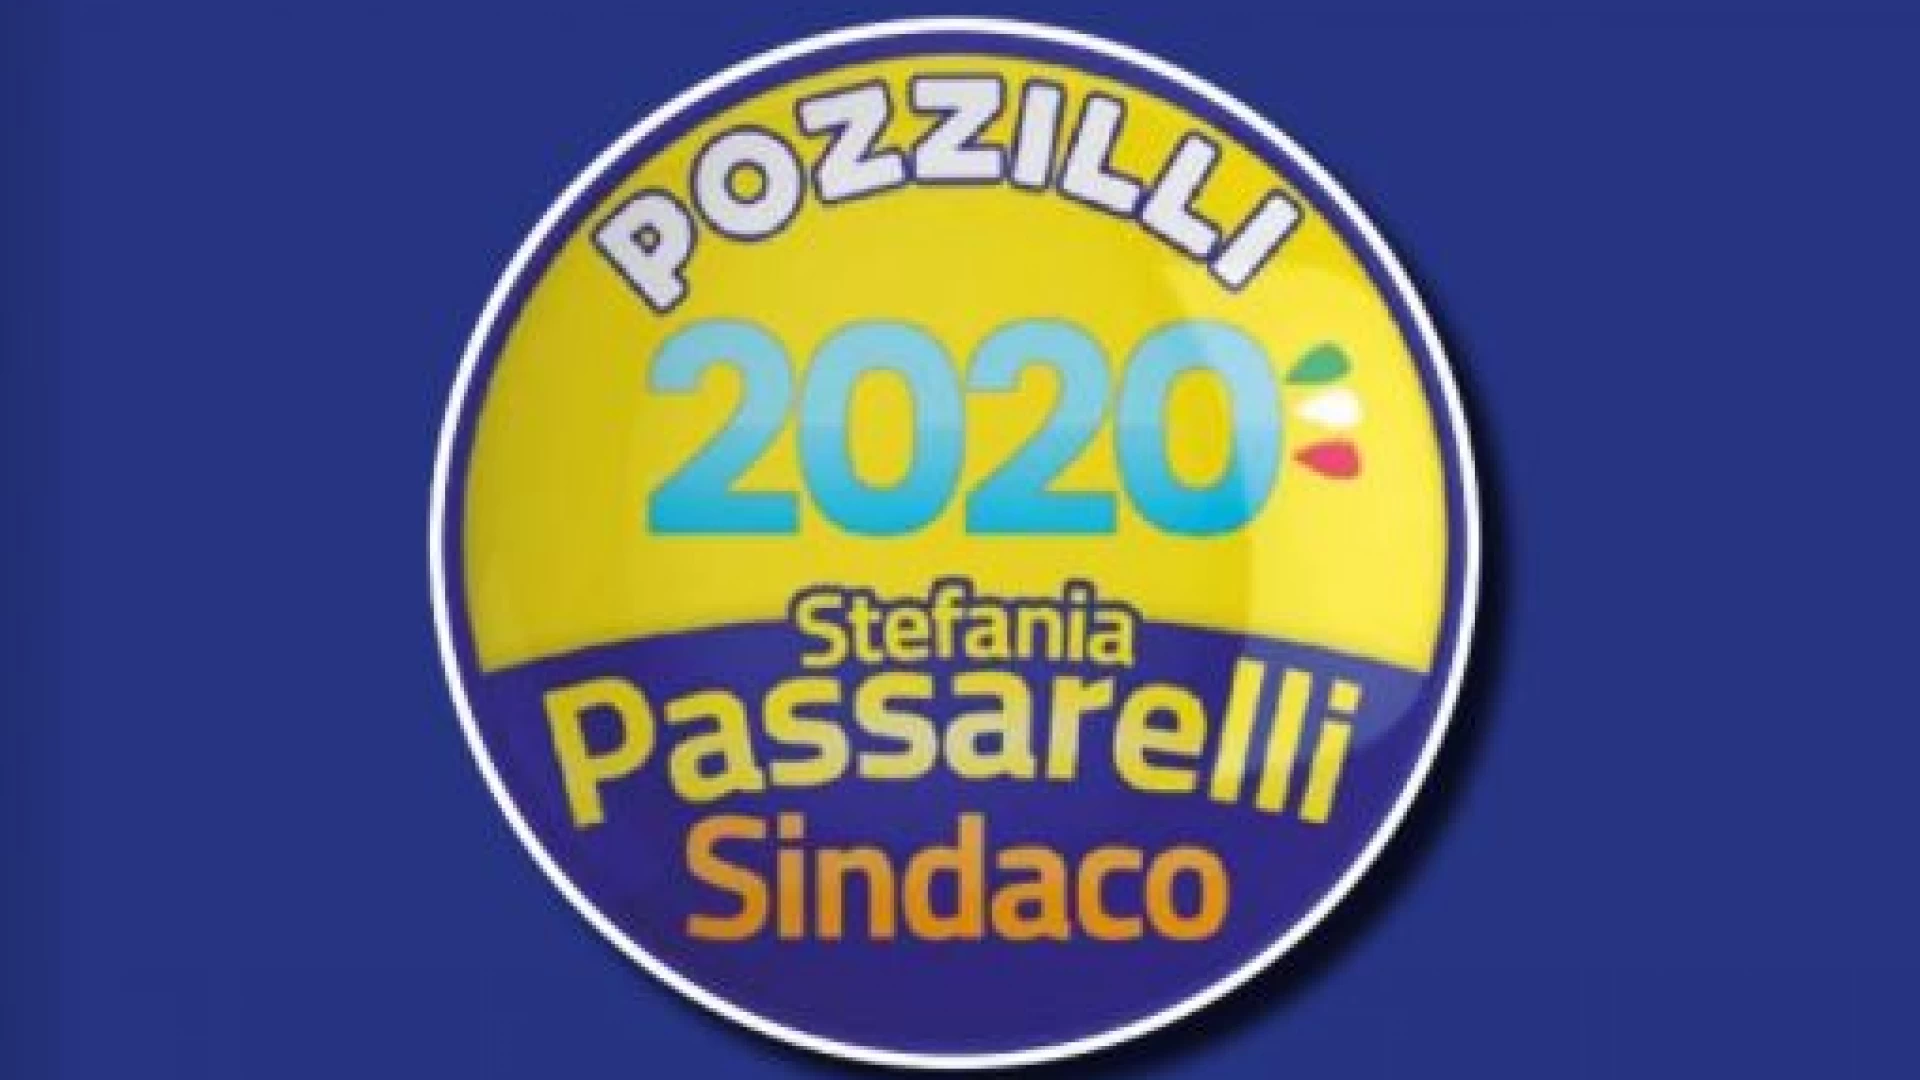 Pozzilli: Stefania Passarelli tenta lo storico “bis” con la lista Pozzilli 2020.